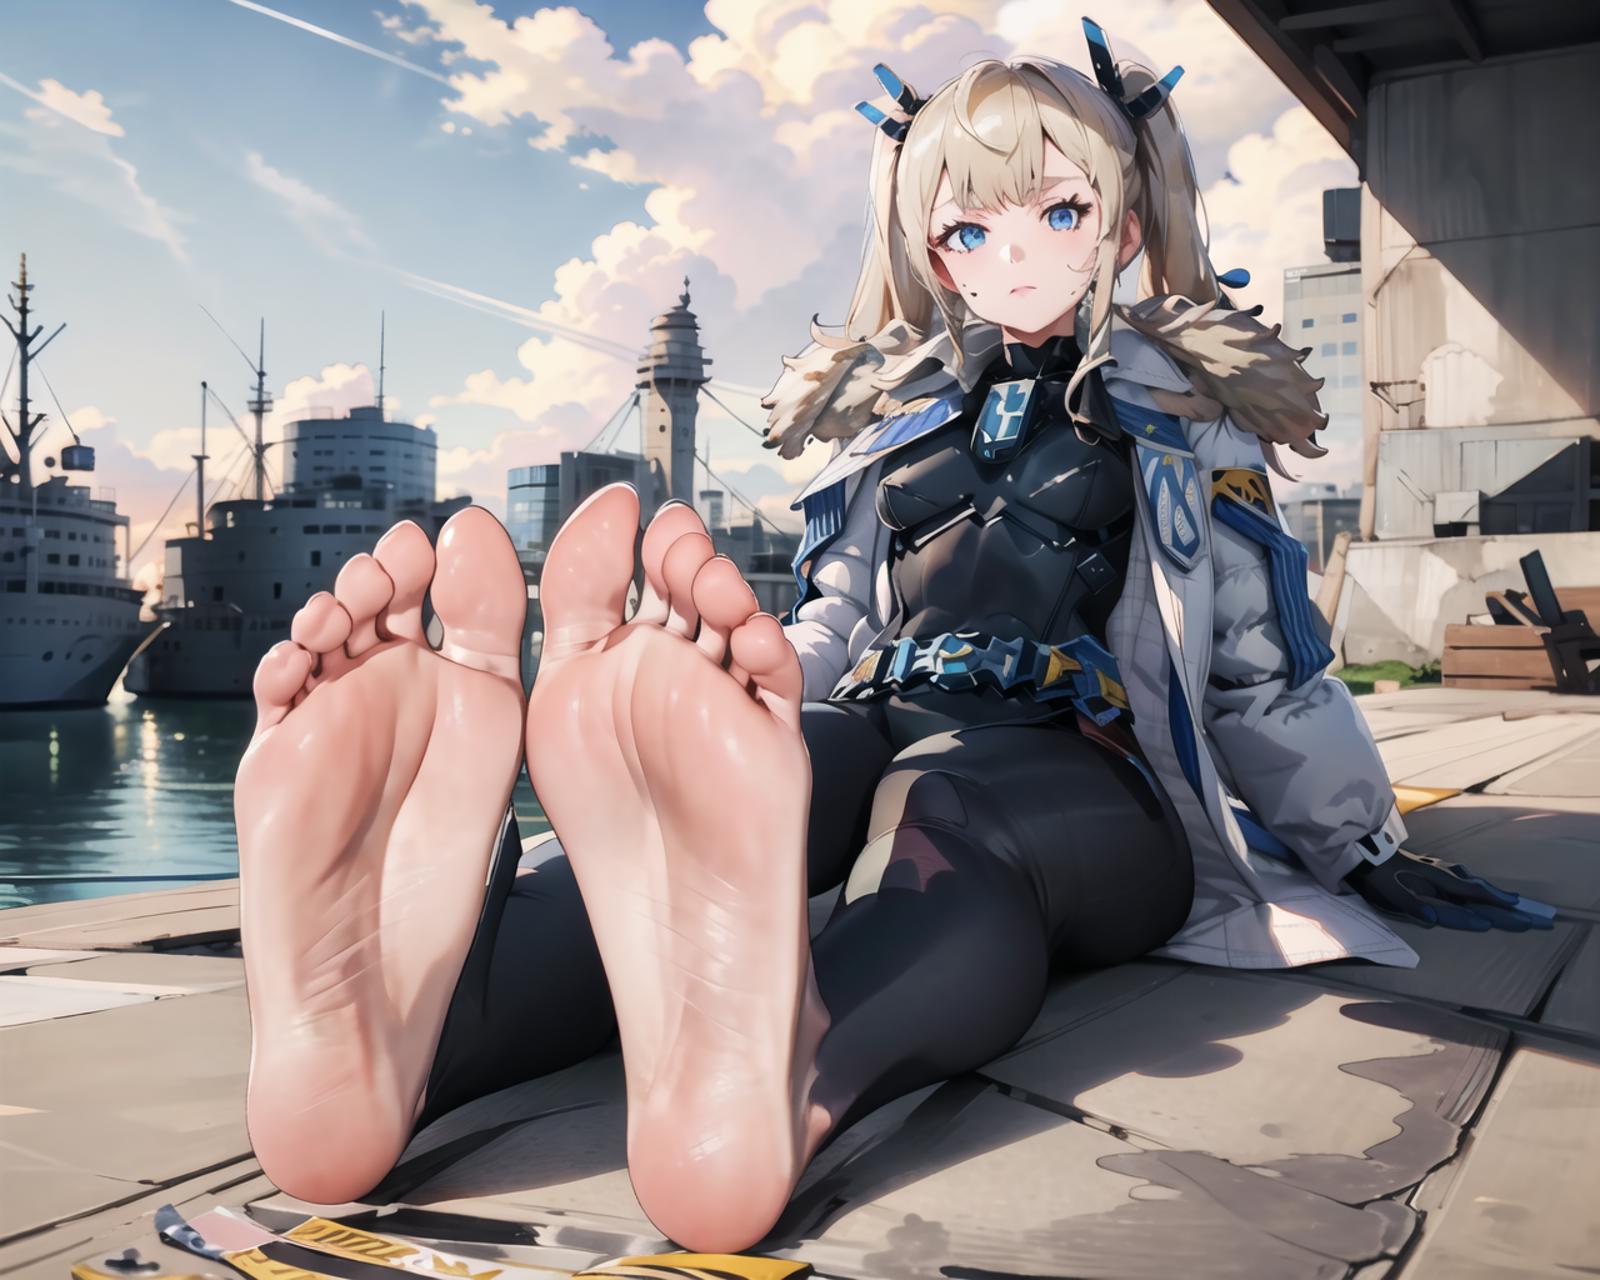 Feet Pose (anime) image by Fenyx